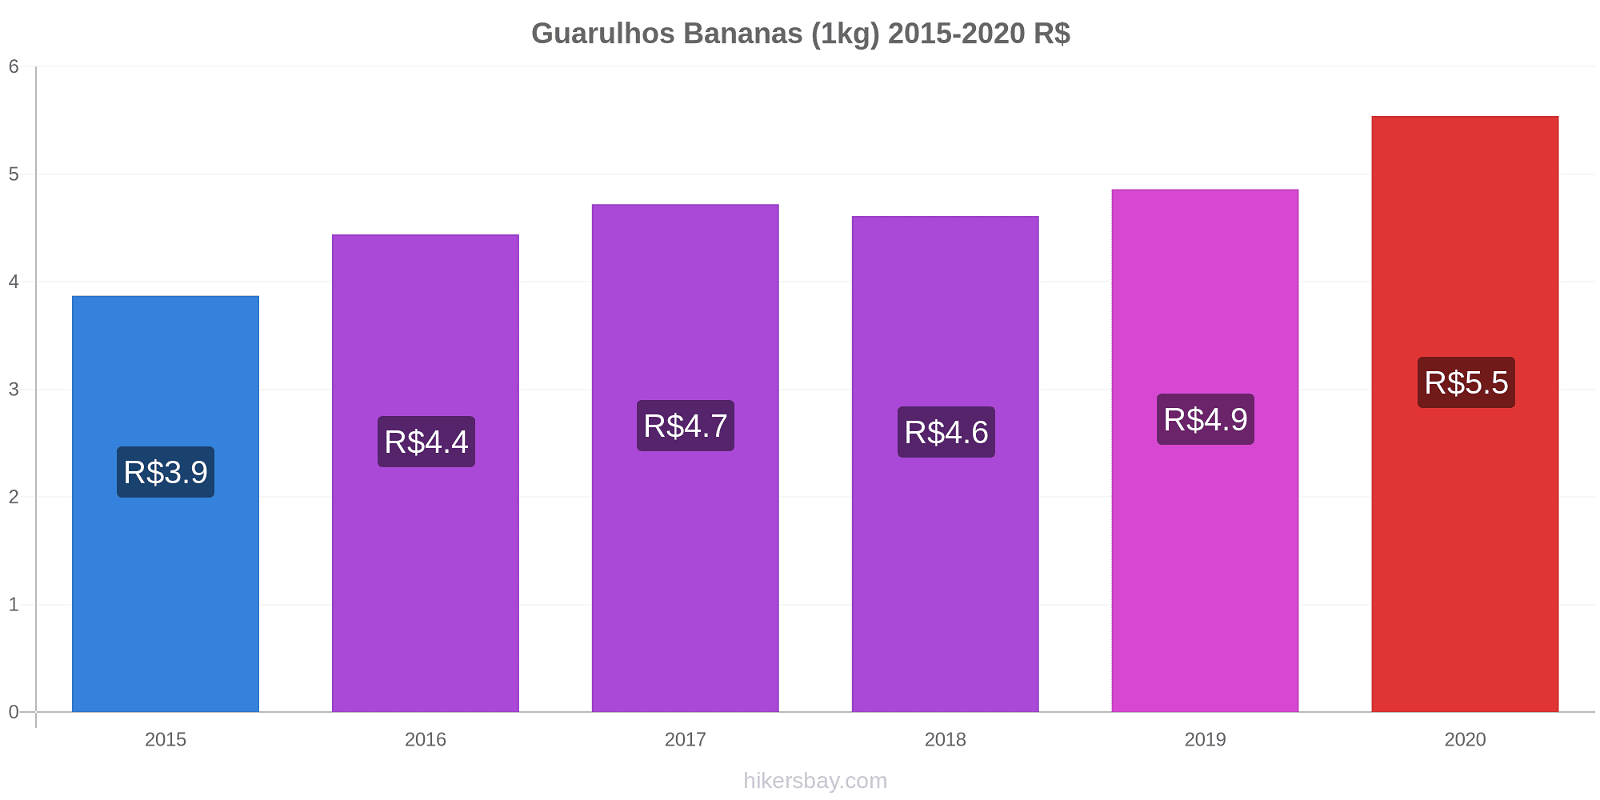 Guarulhos variação de preço Banana (1kg) hikersbay.com